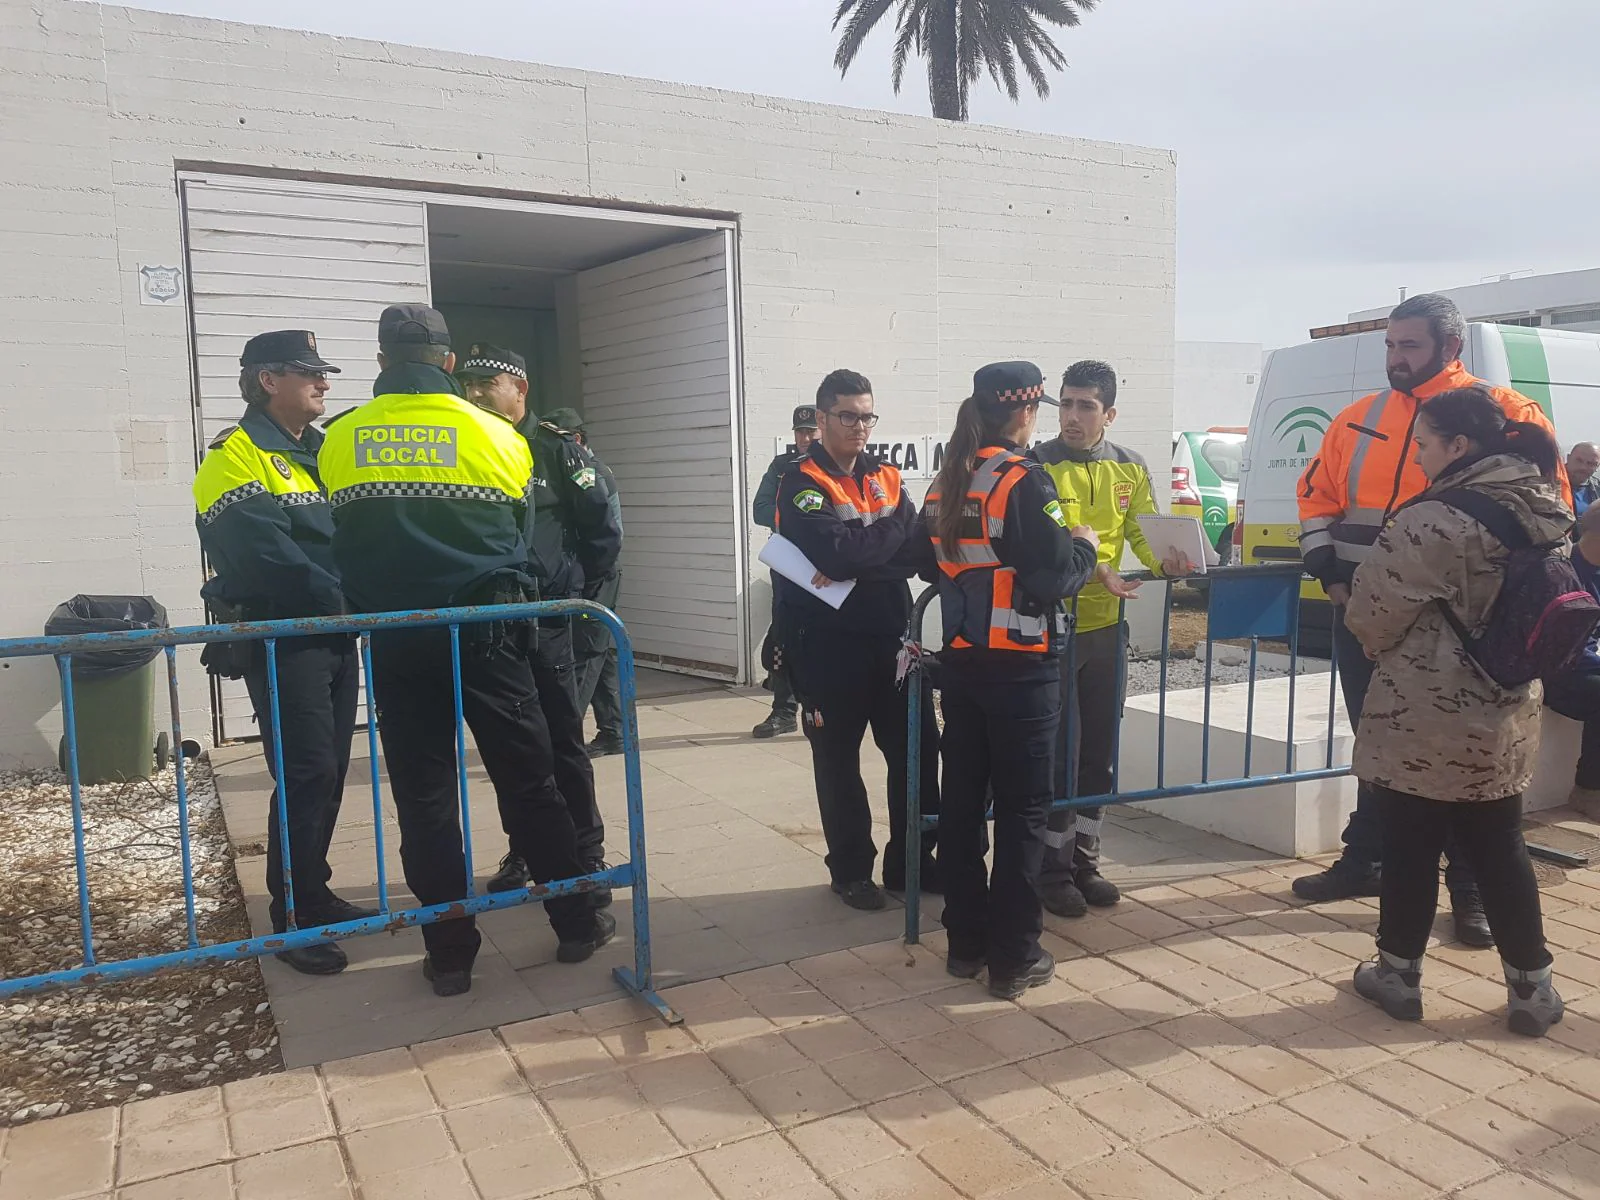 Más de 300 voluntarios, muchos de ellos llegados en autobuses desde Almería capital, forman alrededor de 20 grupos de búsqueda